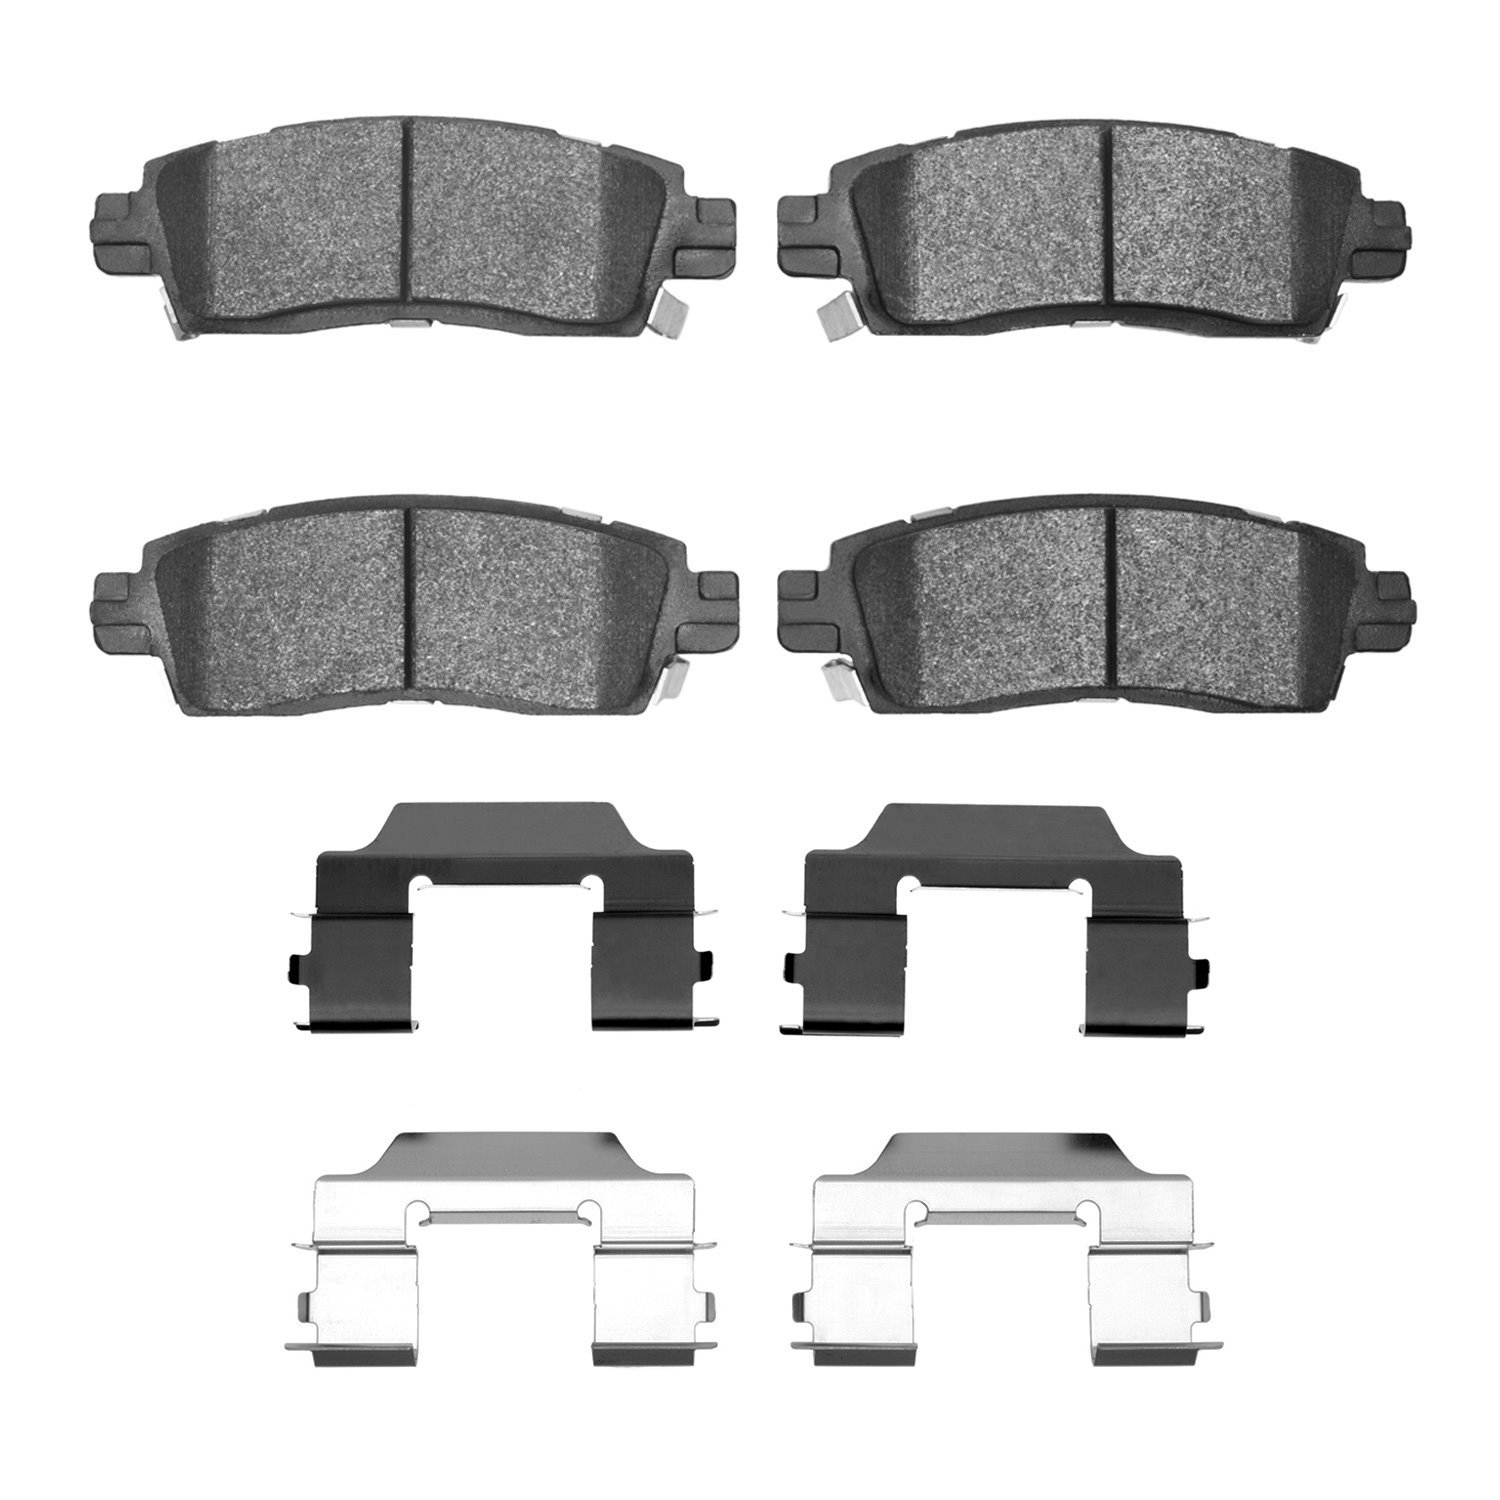 1310-0883-01 3000-Series Ceramic Brake Pads & Hardware Kit, 2002-2019 GM, Position: Rear